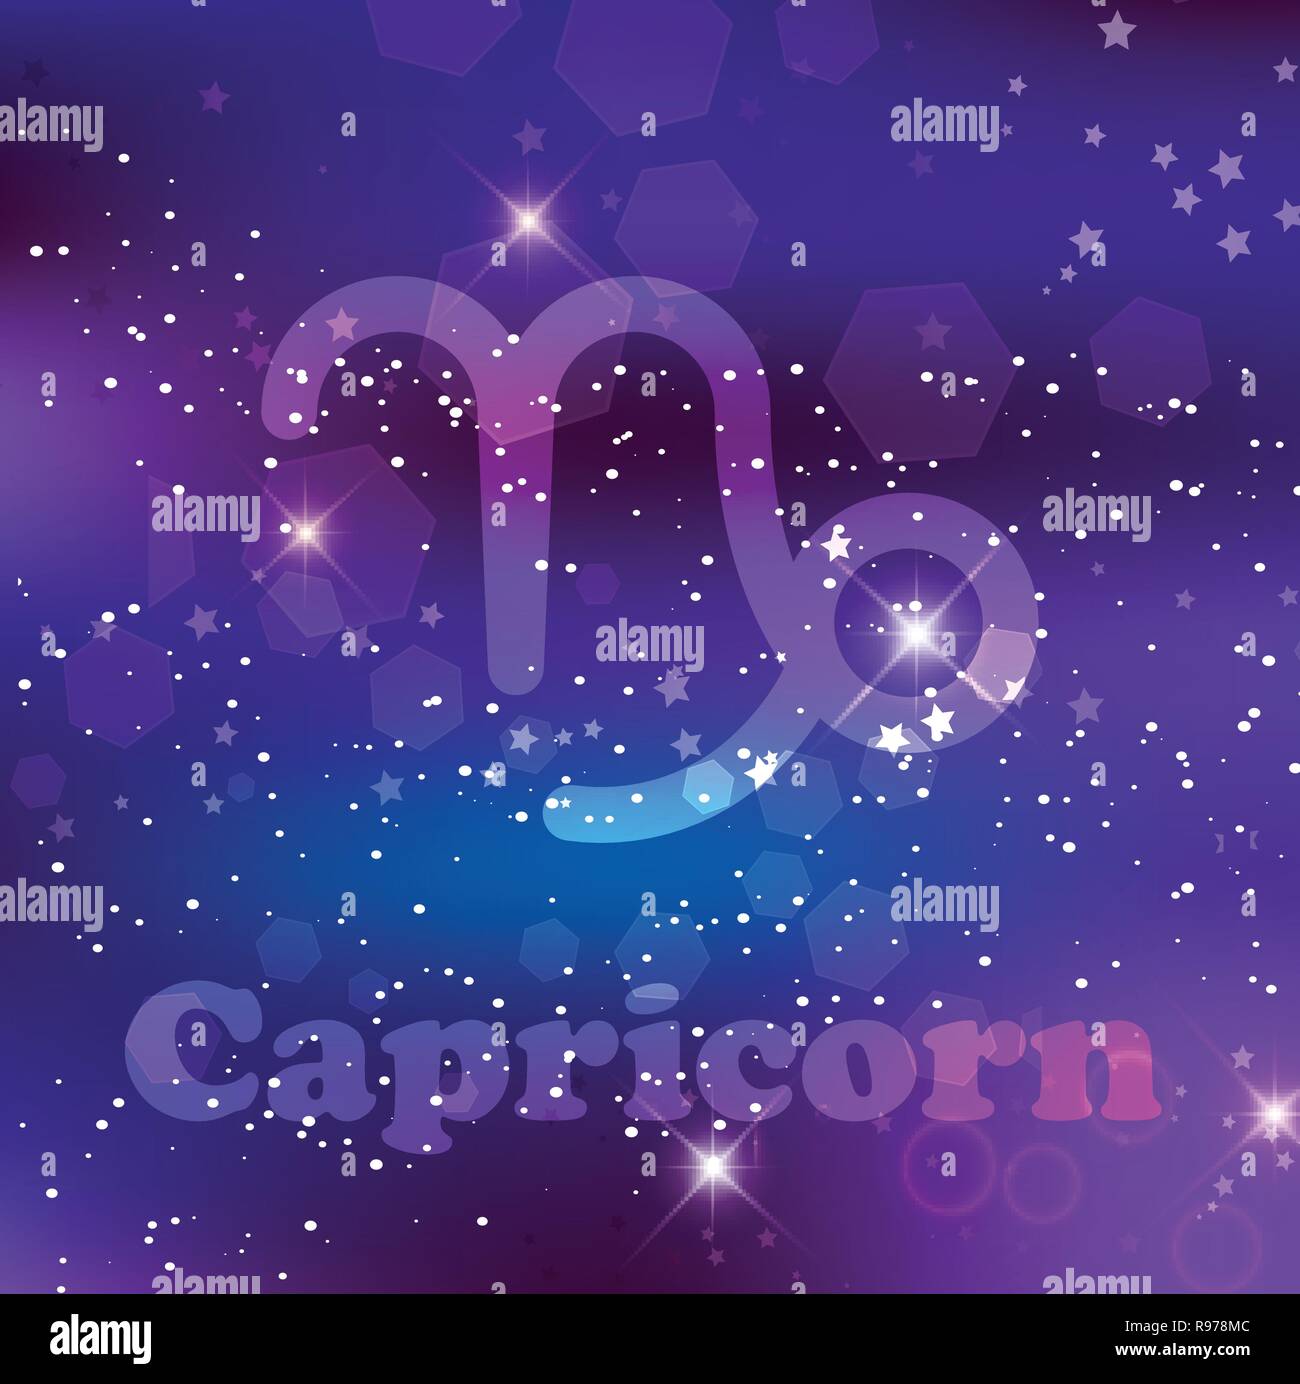 Capricorno segno zodiacale e costellazione sul fondo cosmico con stelle luccicanti e nebulosa. Illustrazione Vettoriale, banner, poster, scheda di capra. Spazio, AST Illustrazione Vettoriale